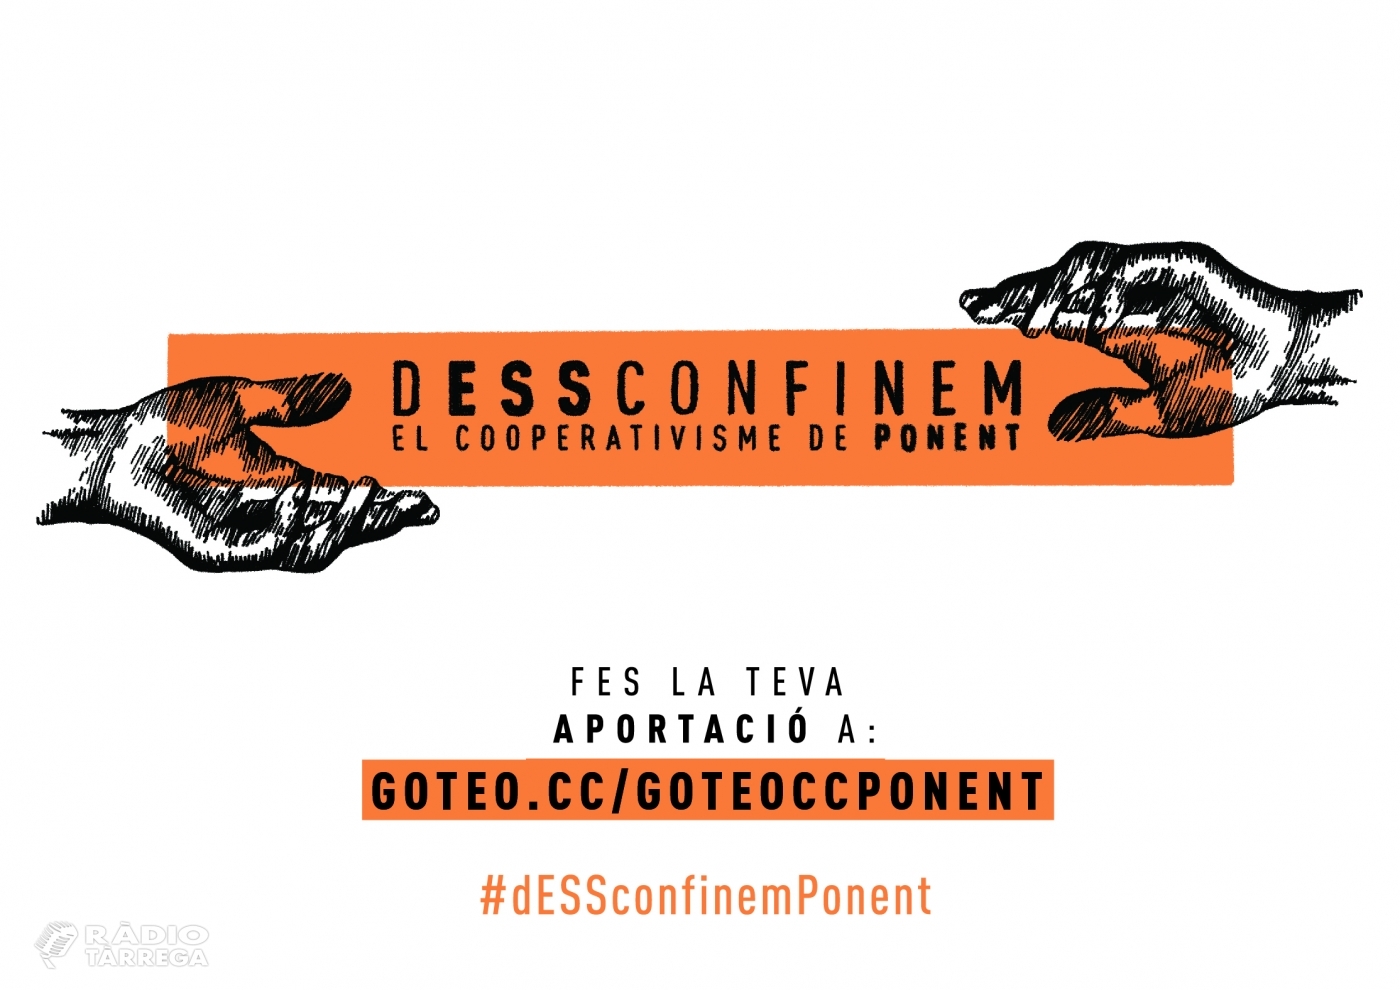 En només sis dies la campanya de micromecenatge #dESSconfinemPonent aconsegueix el primer repte econòmic